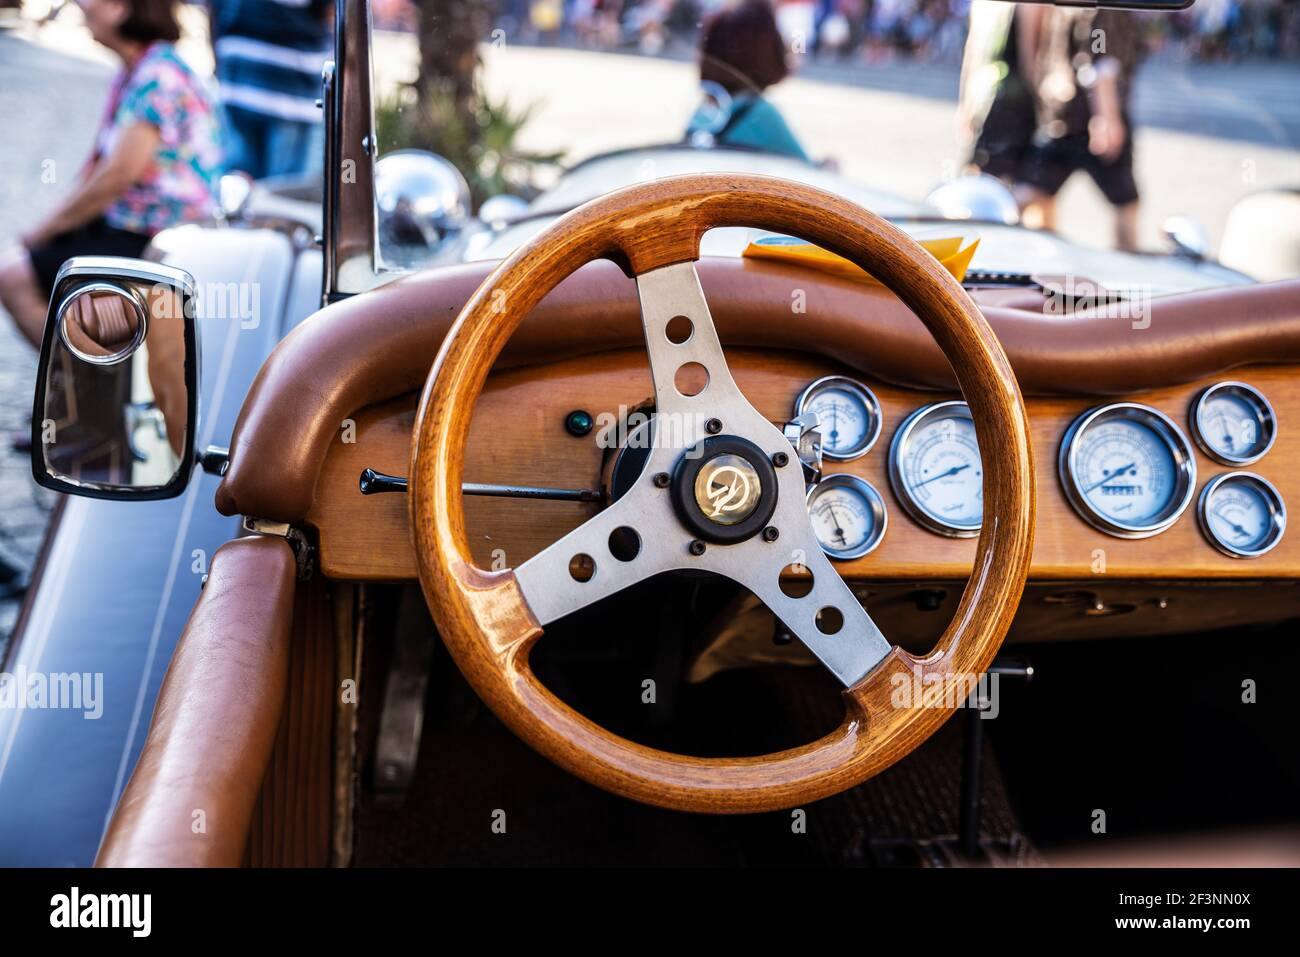 Naples, Italie - 9 septembre 2019 : volant et tableau de bord en bois d'une vieille voiture rétro des années 1920 de la marque Mercedes Benz garée sur une rade Banque D'Images